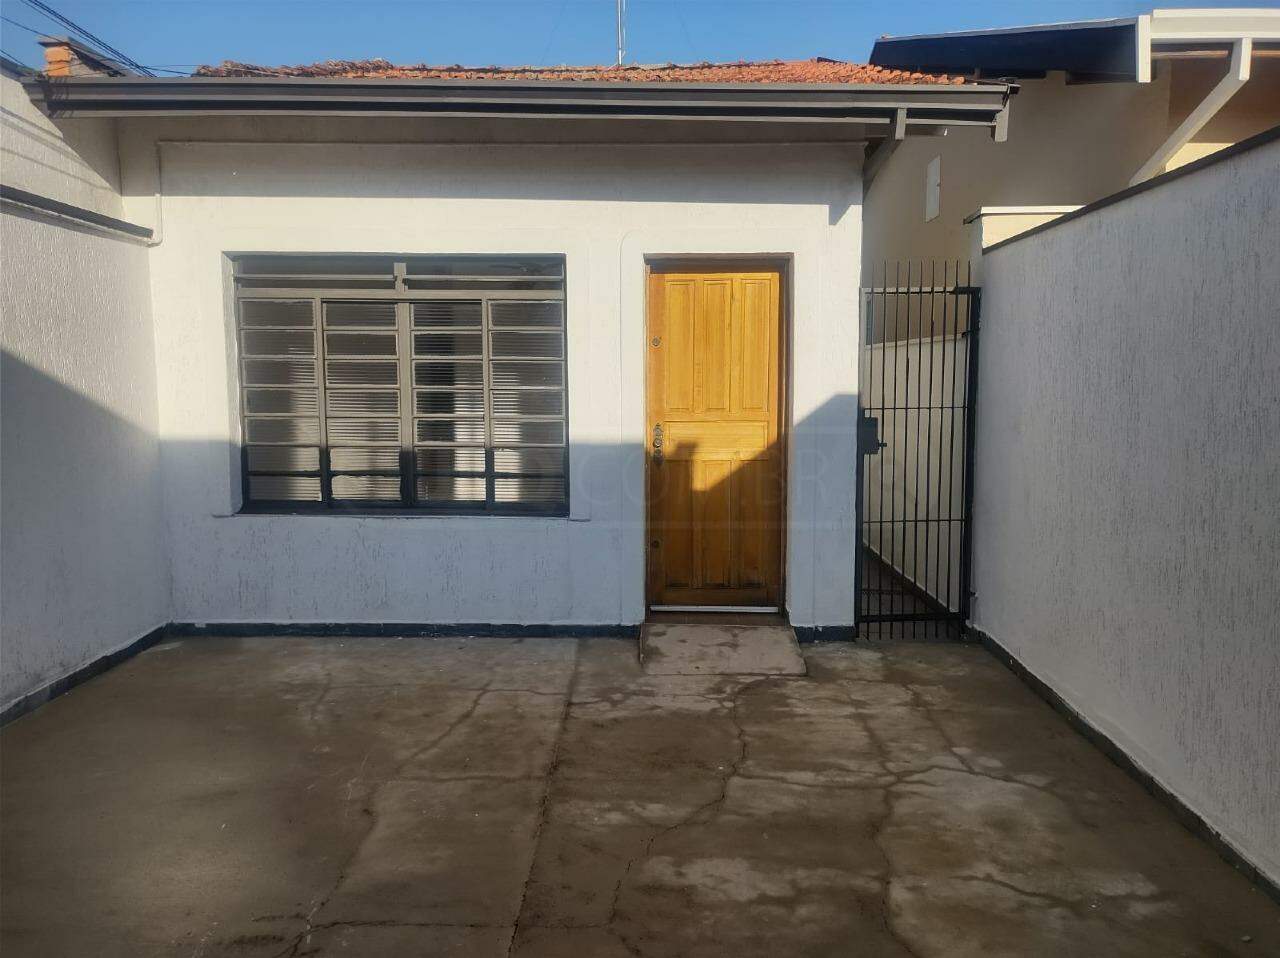 Casa à venda, 3 quartos, sendo 1 suíte, 4 vagas, no bairro Jardim Petrópolis em Piracicaba - SP